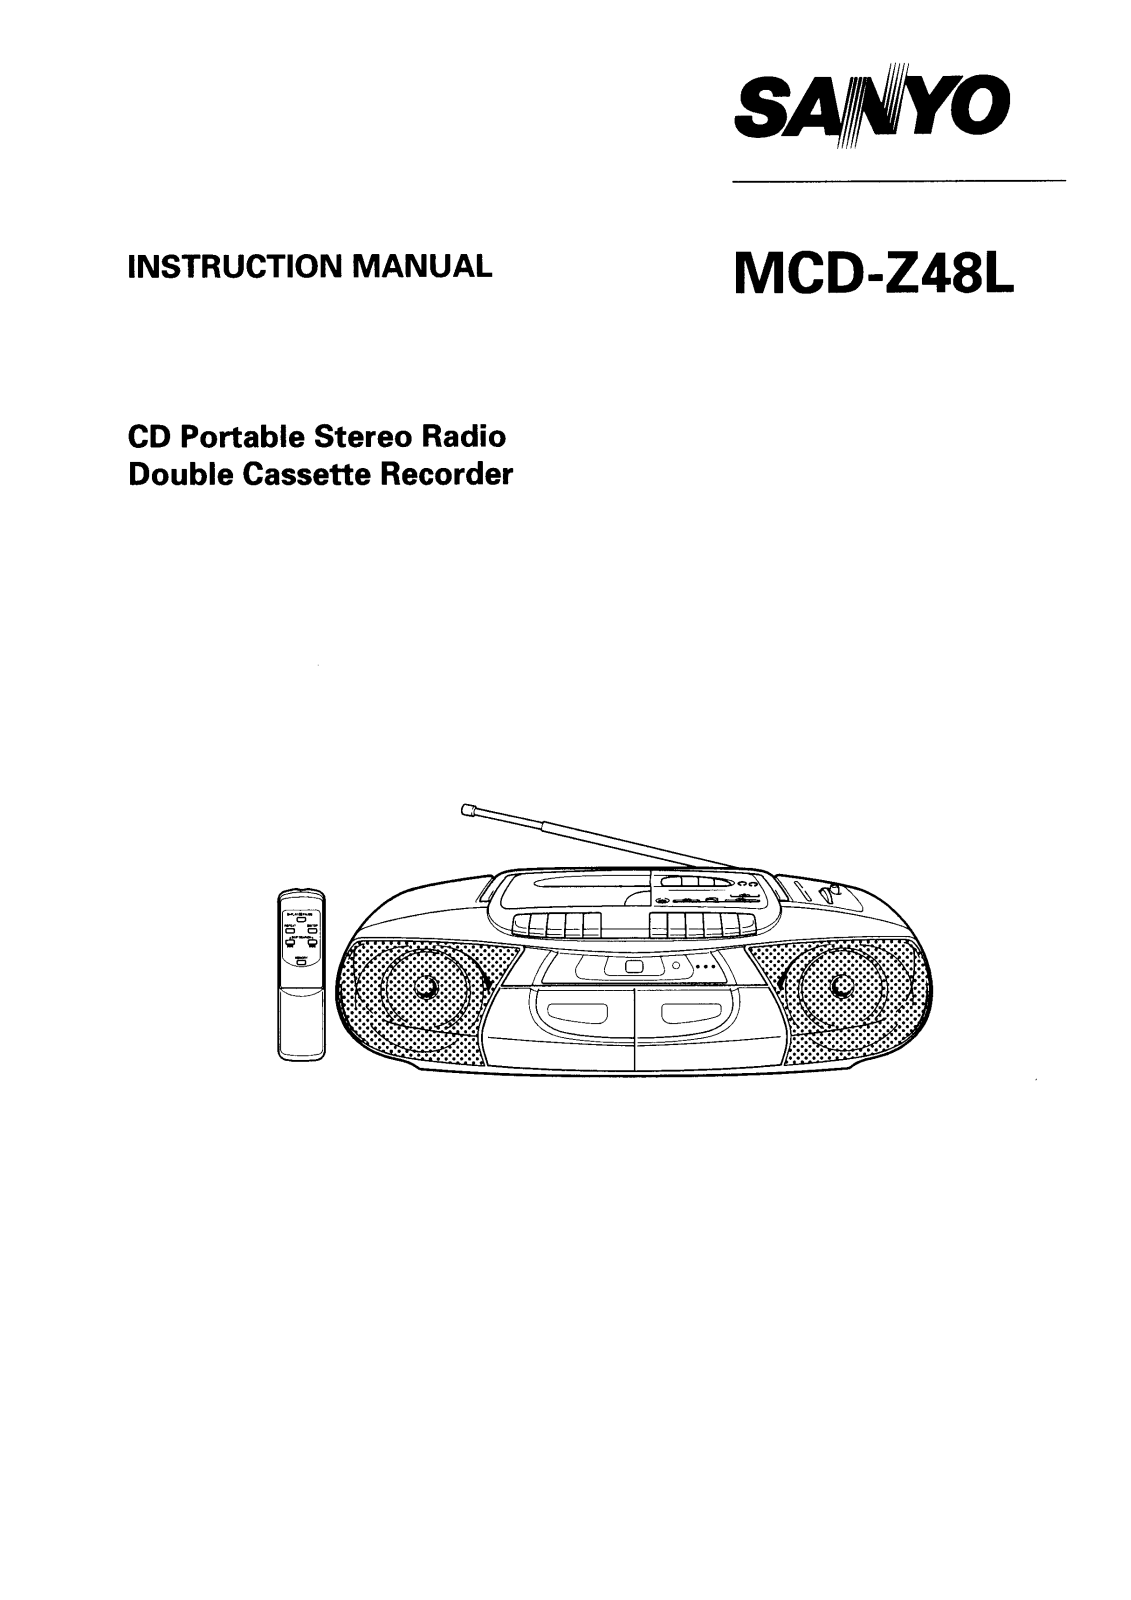 Sanyo MCD-Z48L Instruction Manual